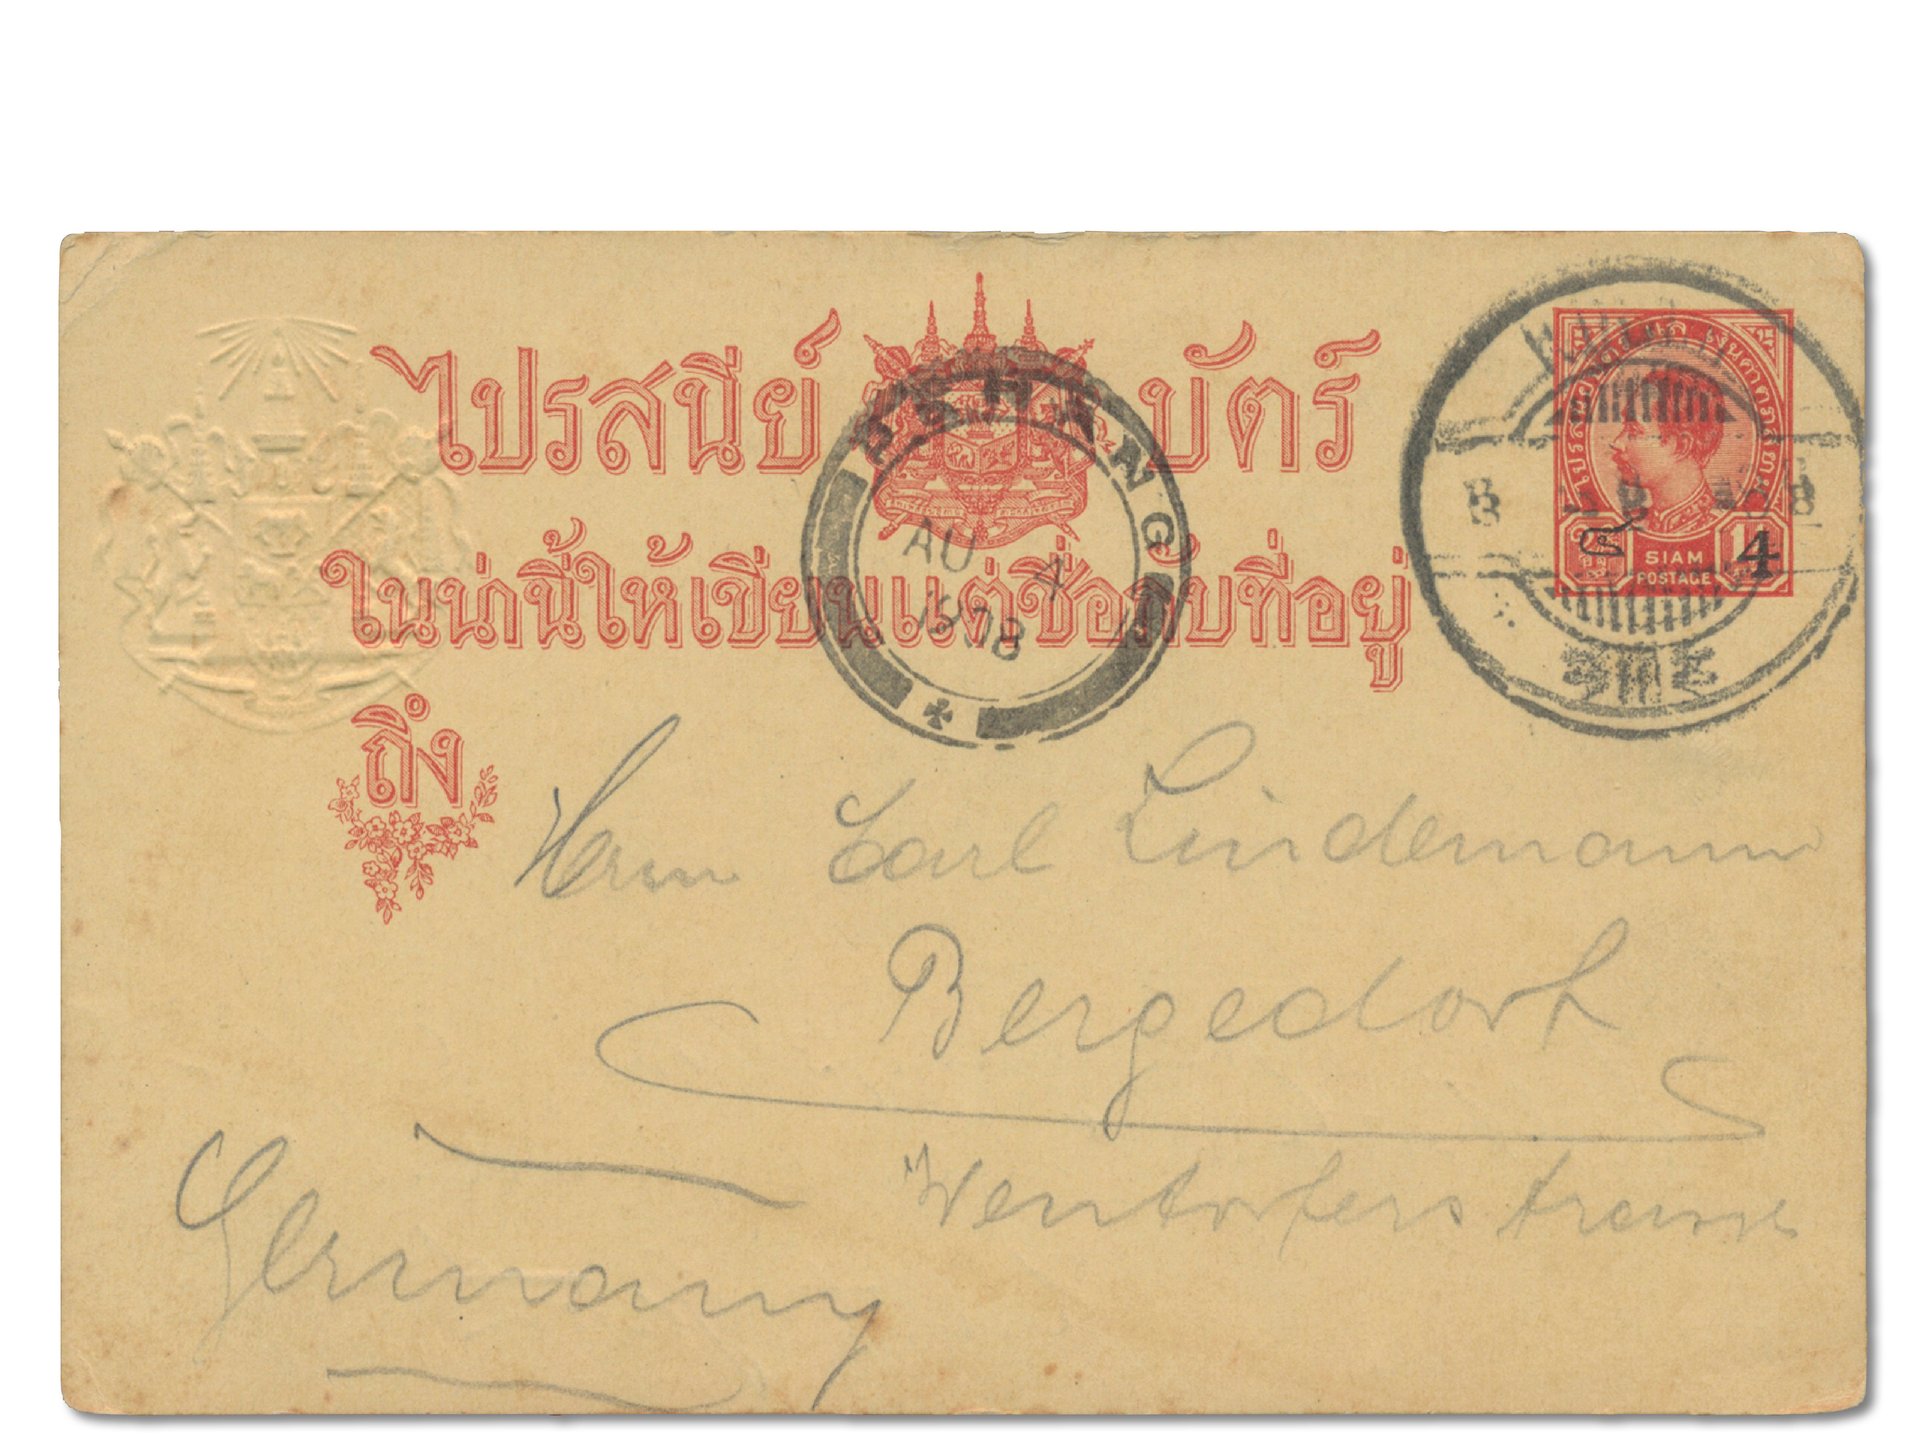 Ganzsachenkarte mit dem ersten vollständigen Stempel von dem königlich siamesischen Postamt in Kulim